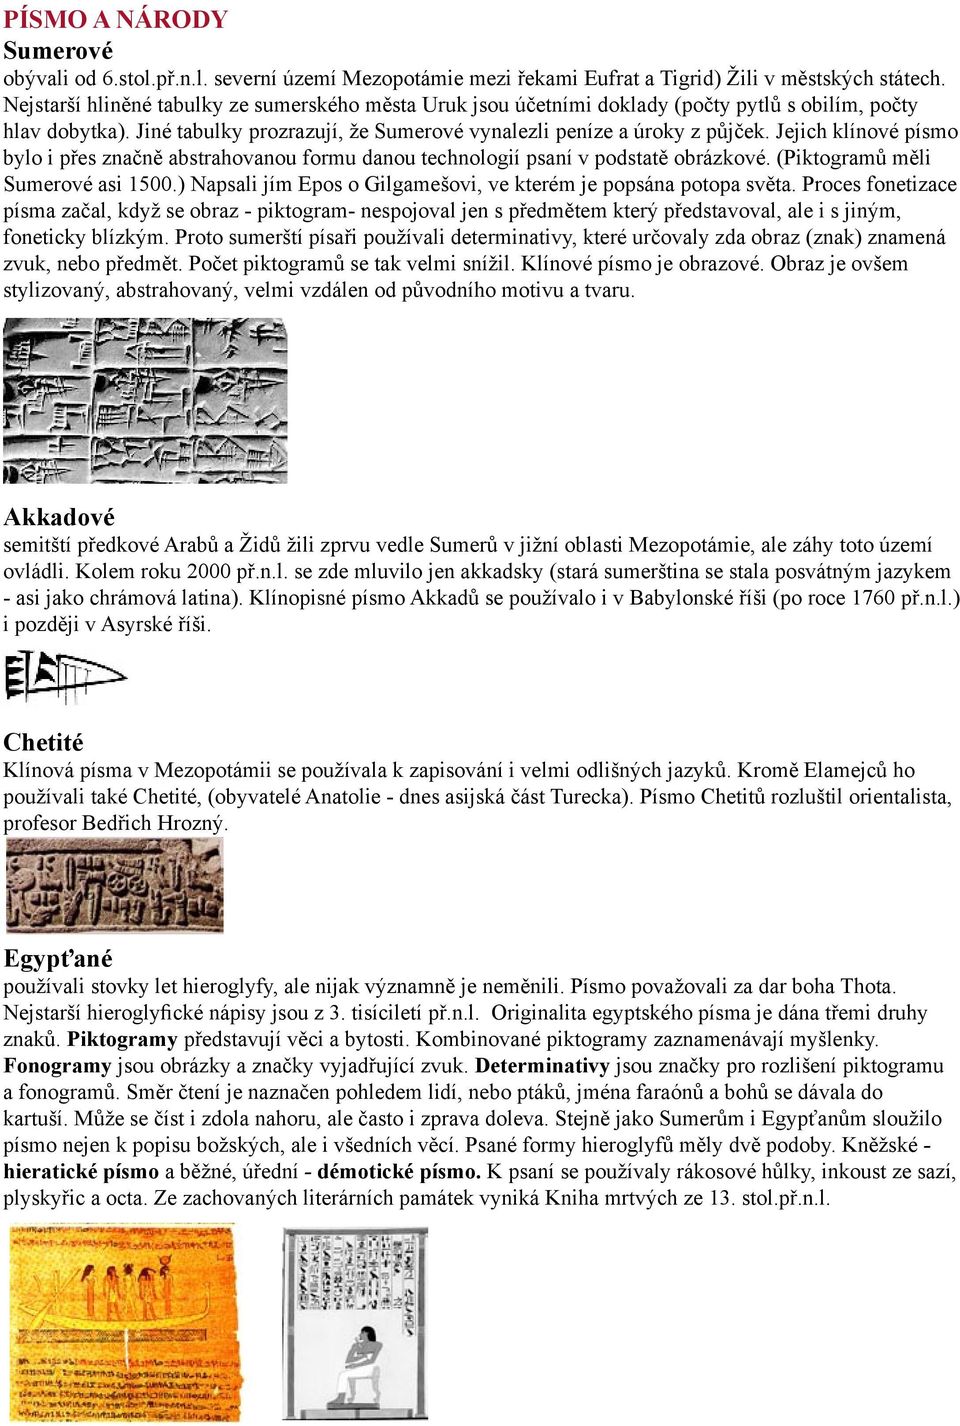 Jejich klínové písmo bylo i přes značně abstrahovanou formu danou technologií psaní v podstatě obrázkové. (Piktogramů měli Sumerové asi 1500.